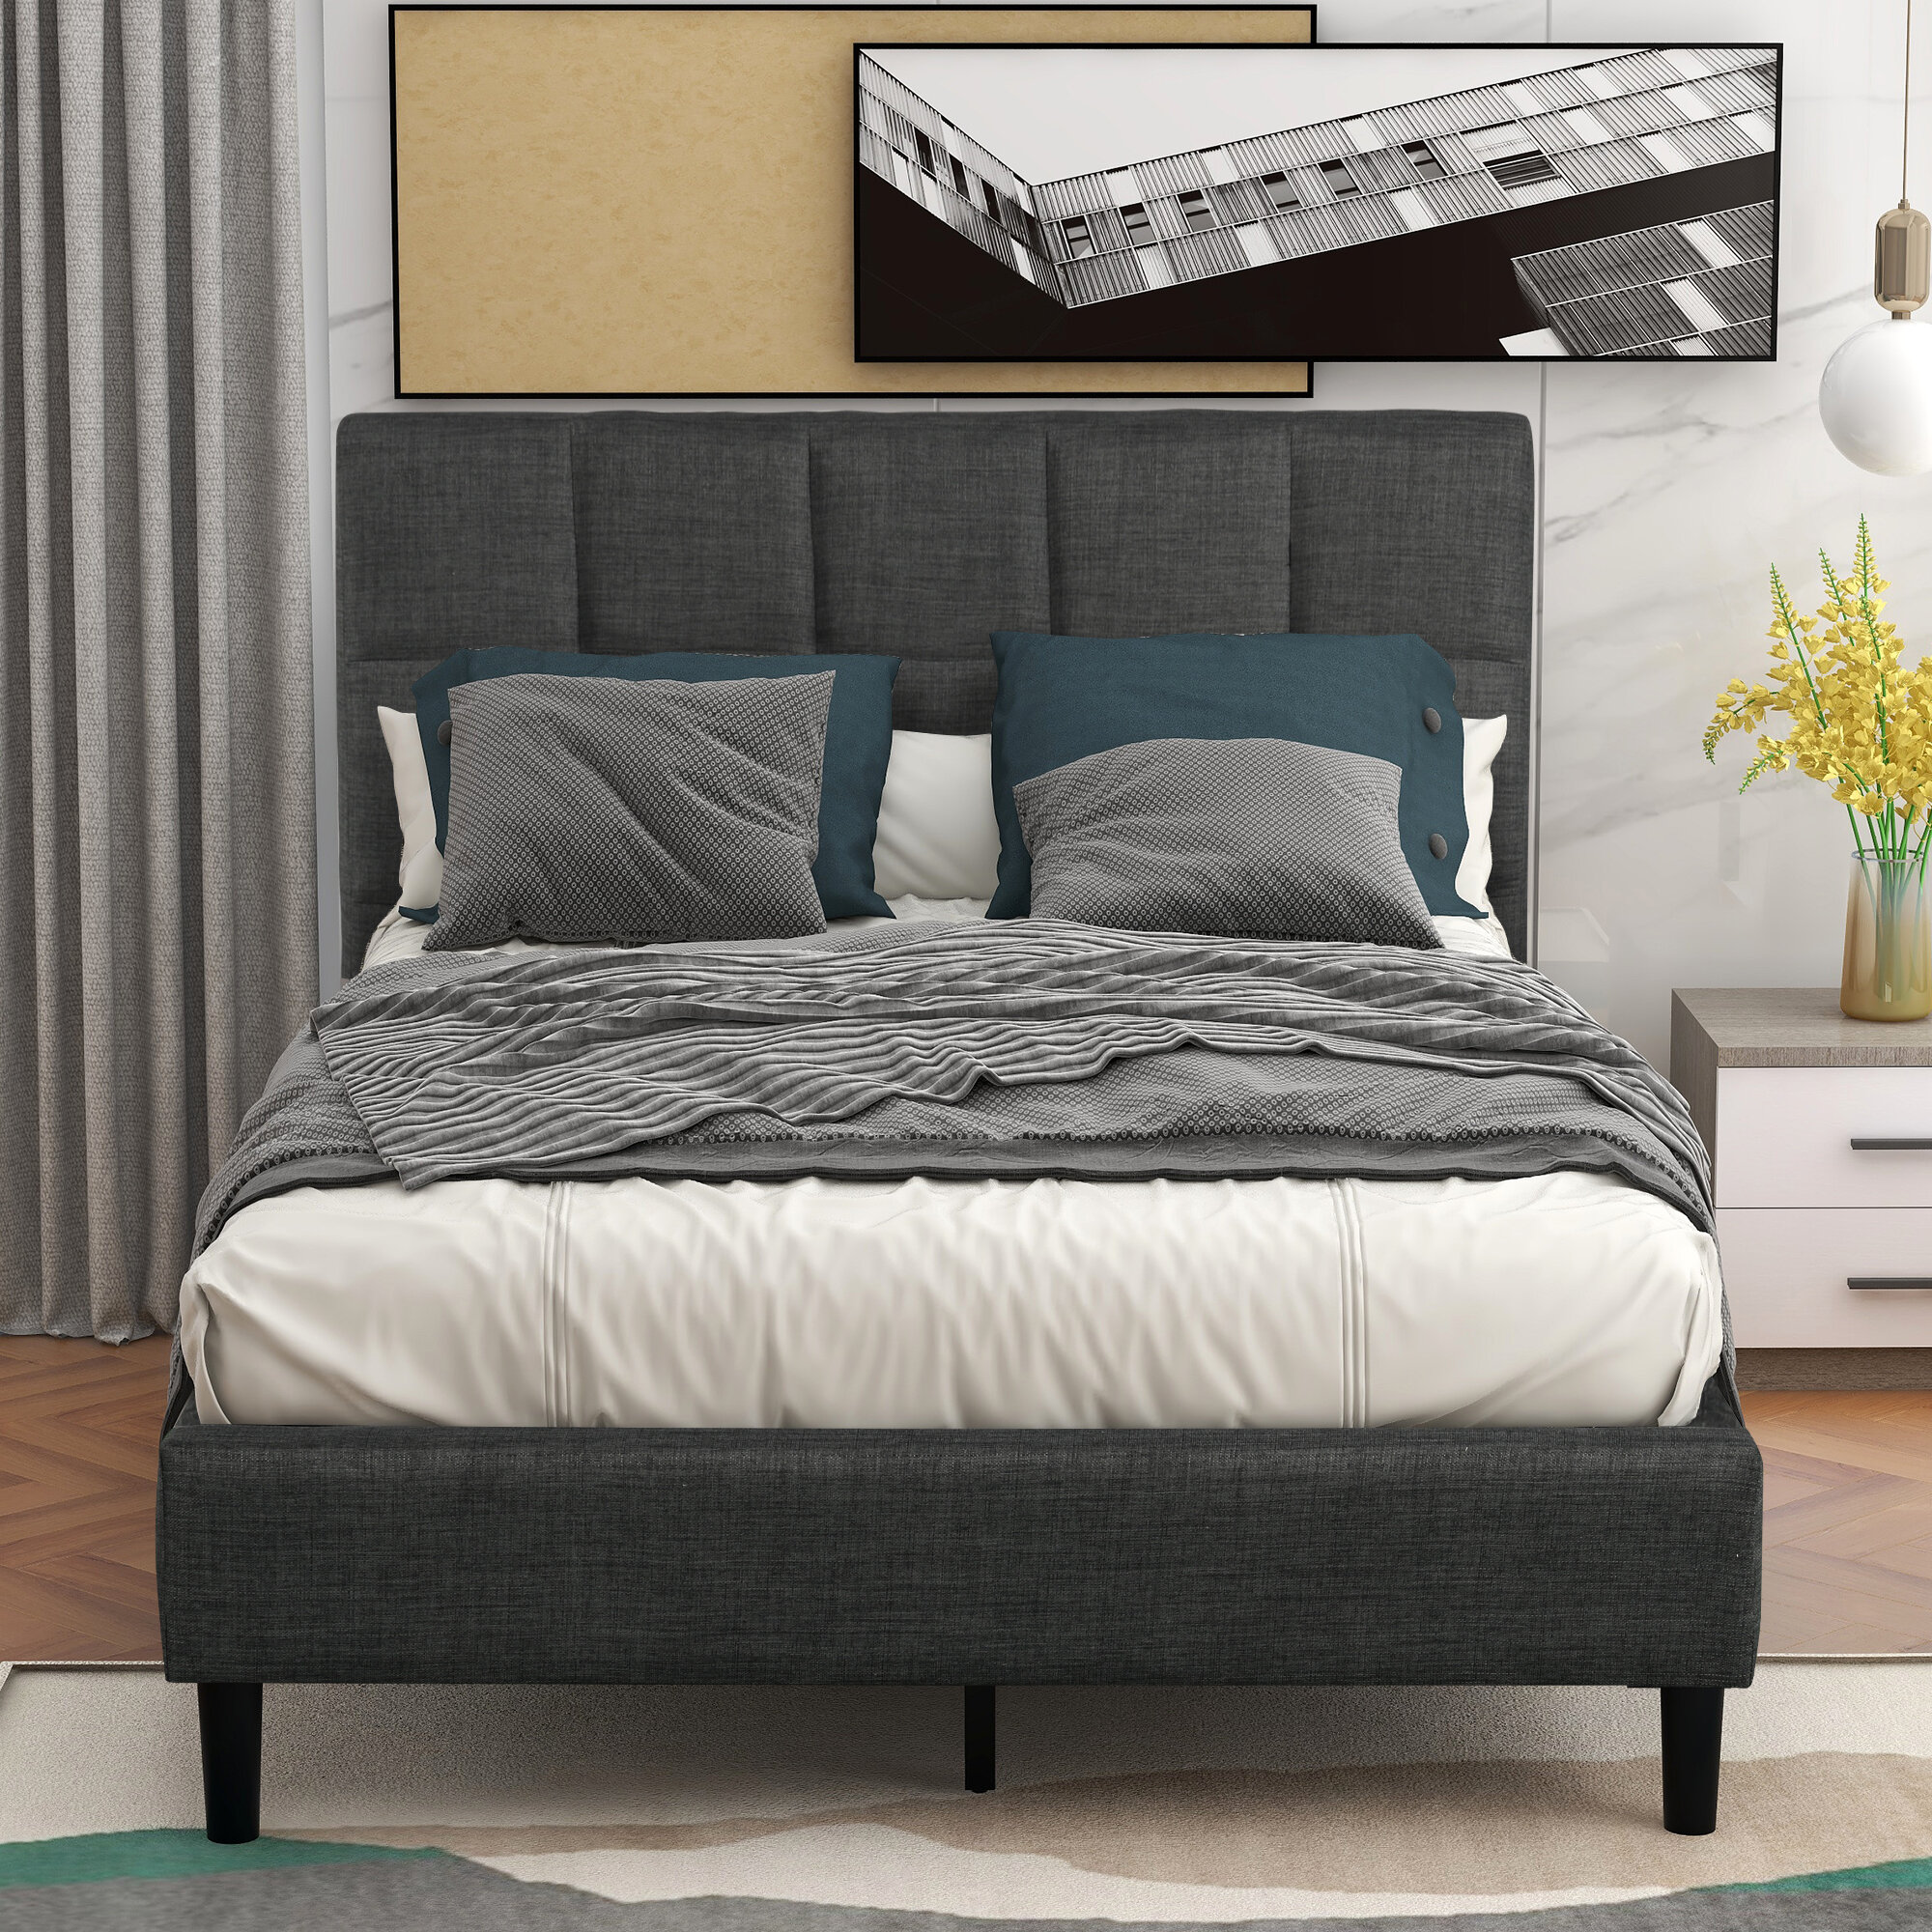 Details about   Full Queen Size Upholstered Platform Bed Frame Mattress Foundation Wood Slat 